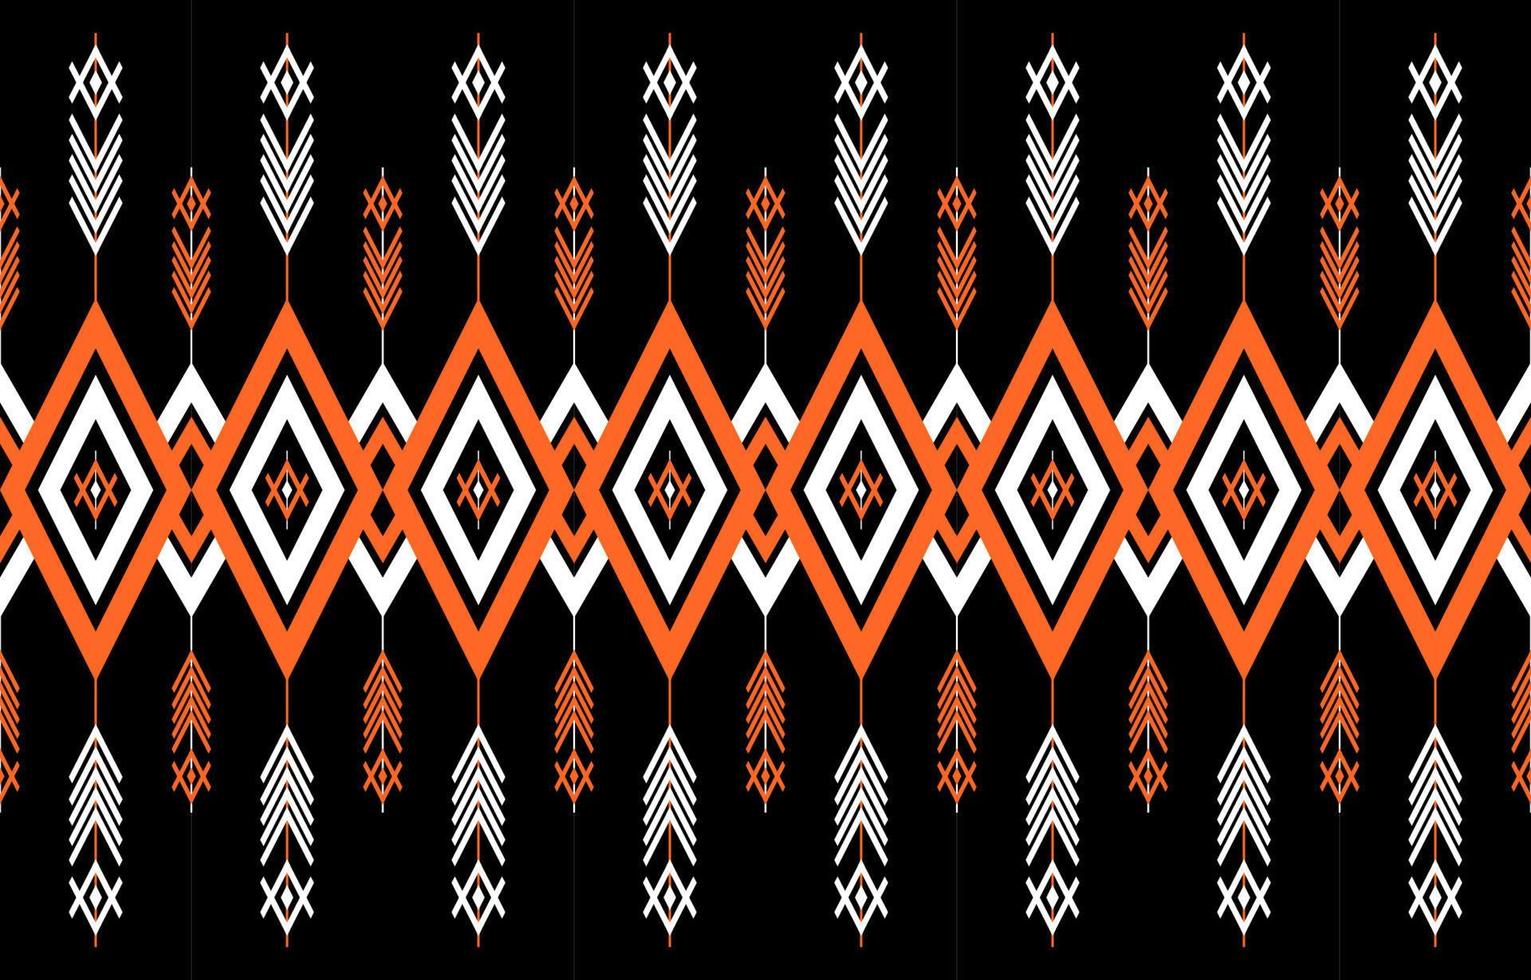 motif géométrique sans couture ethnique. style tribal traditionnel. conception pour le fond, l'illustration, la texture, le tissu, le papier peint, le tapis, les vêtements, la broderie. vecteur